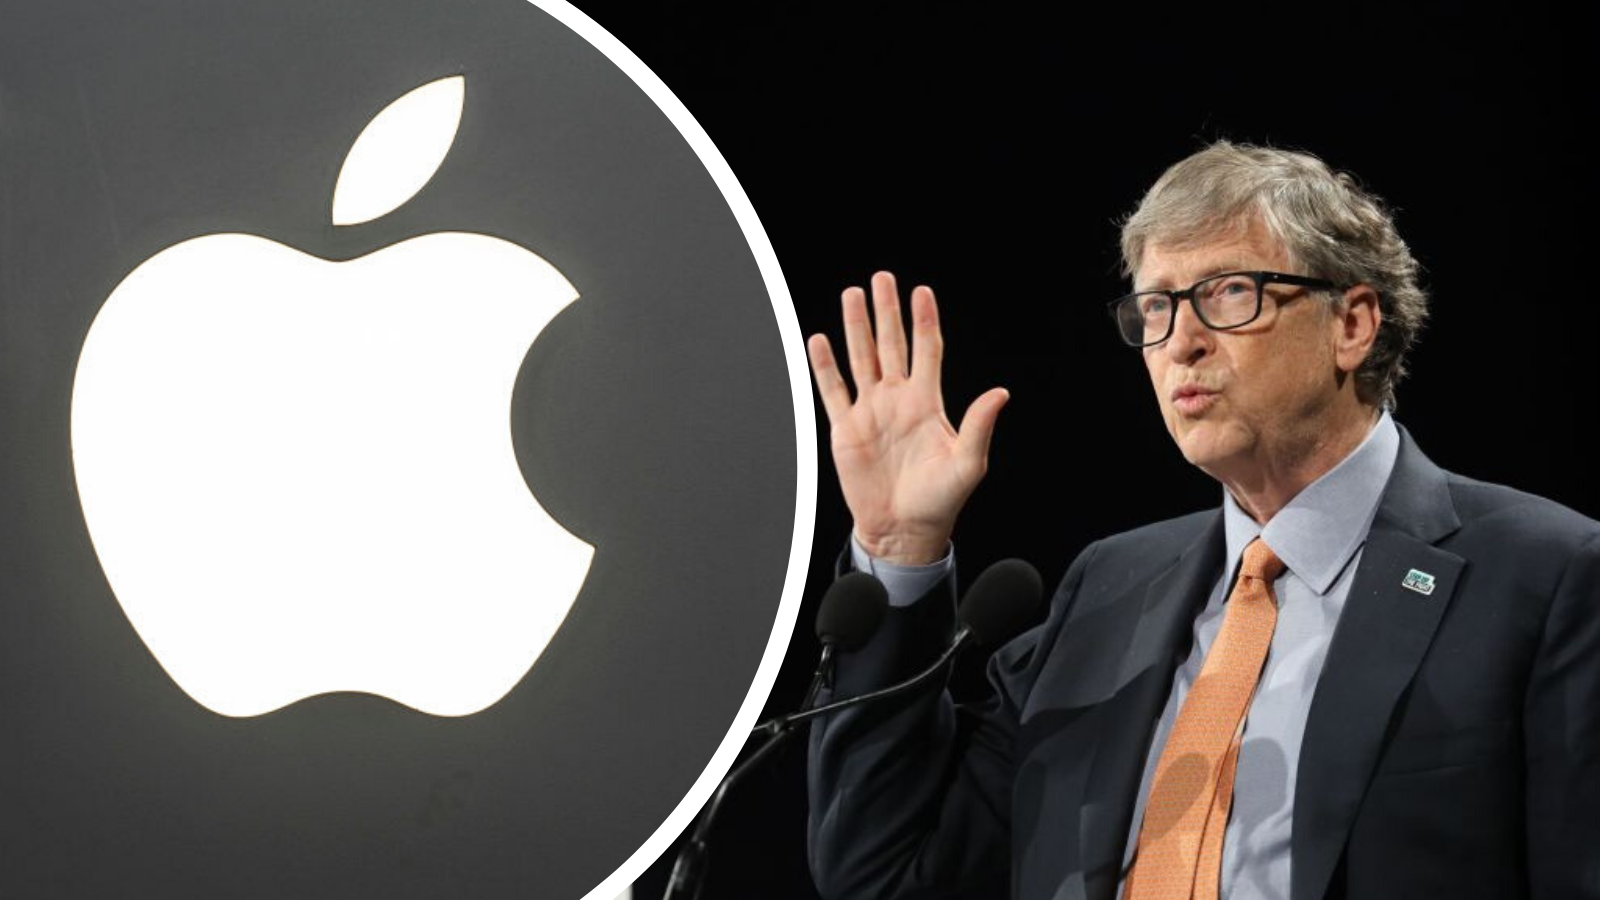 Tỷ phú Bill Gates, ngược lại, nhận ra rằng chìa khóa mở cửa lợi nhuận và sức mạnh là hệ điều hành và hệ sinh thái phát triển mạnh.